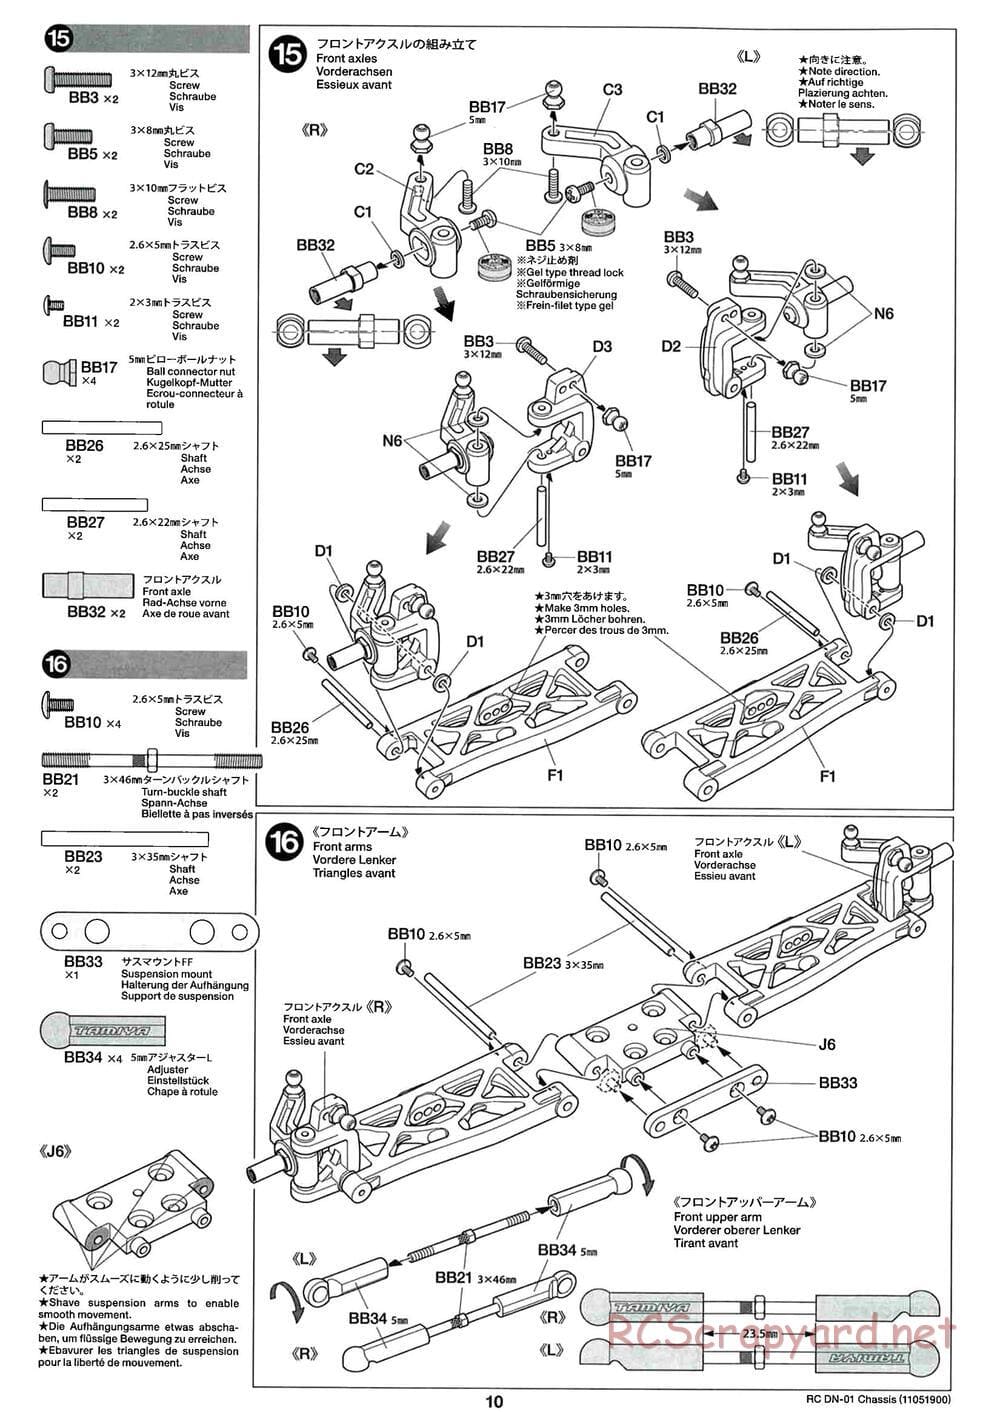 Tamiya - DN-01 Chassis - Manual - Page 10